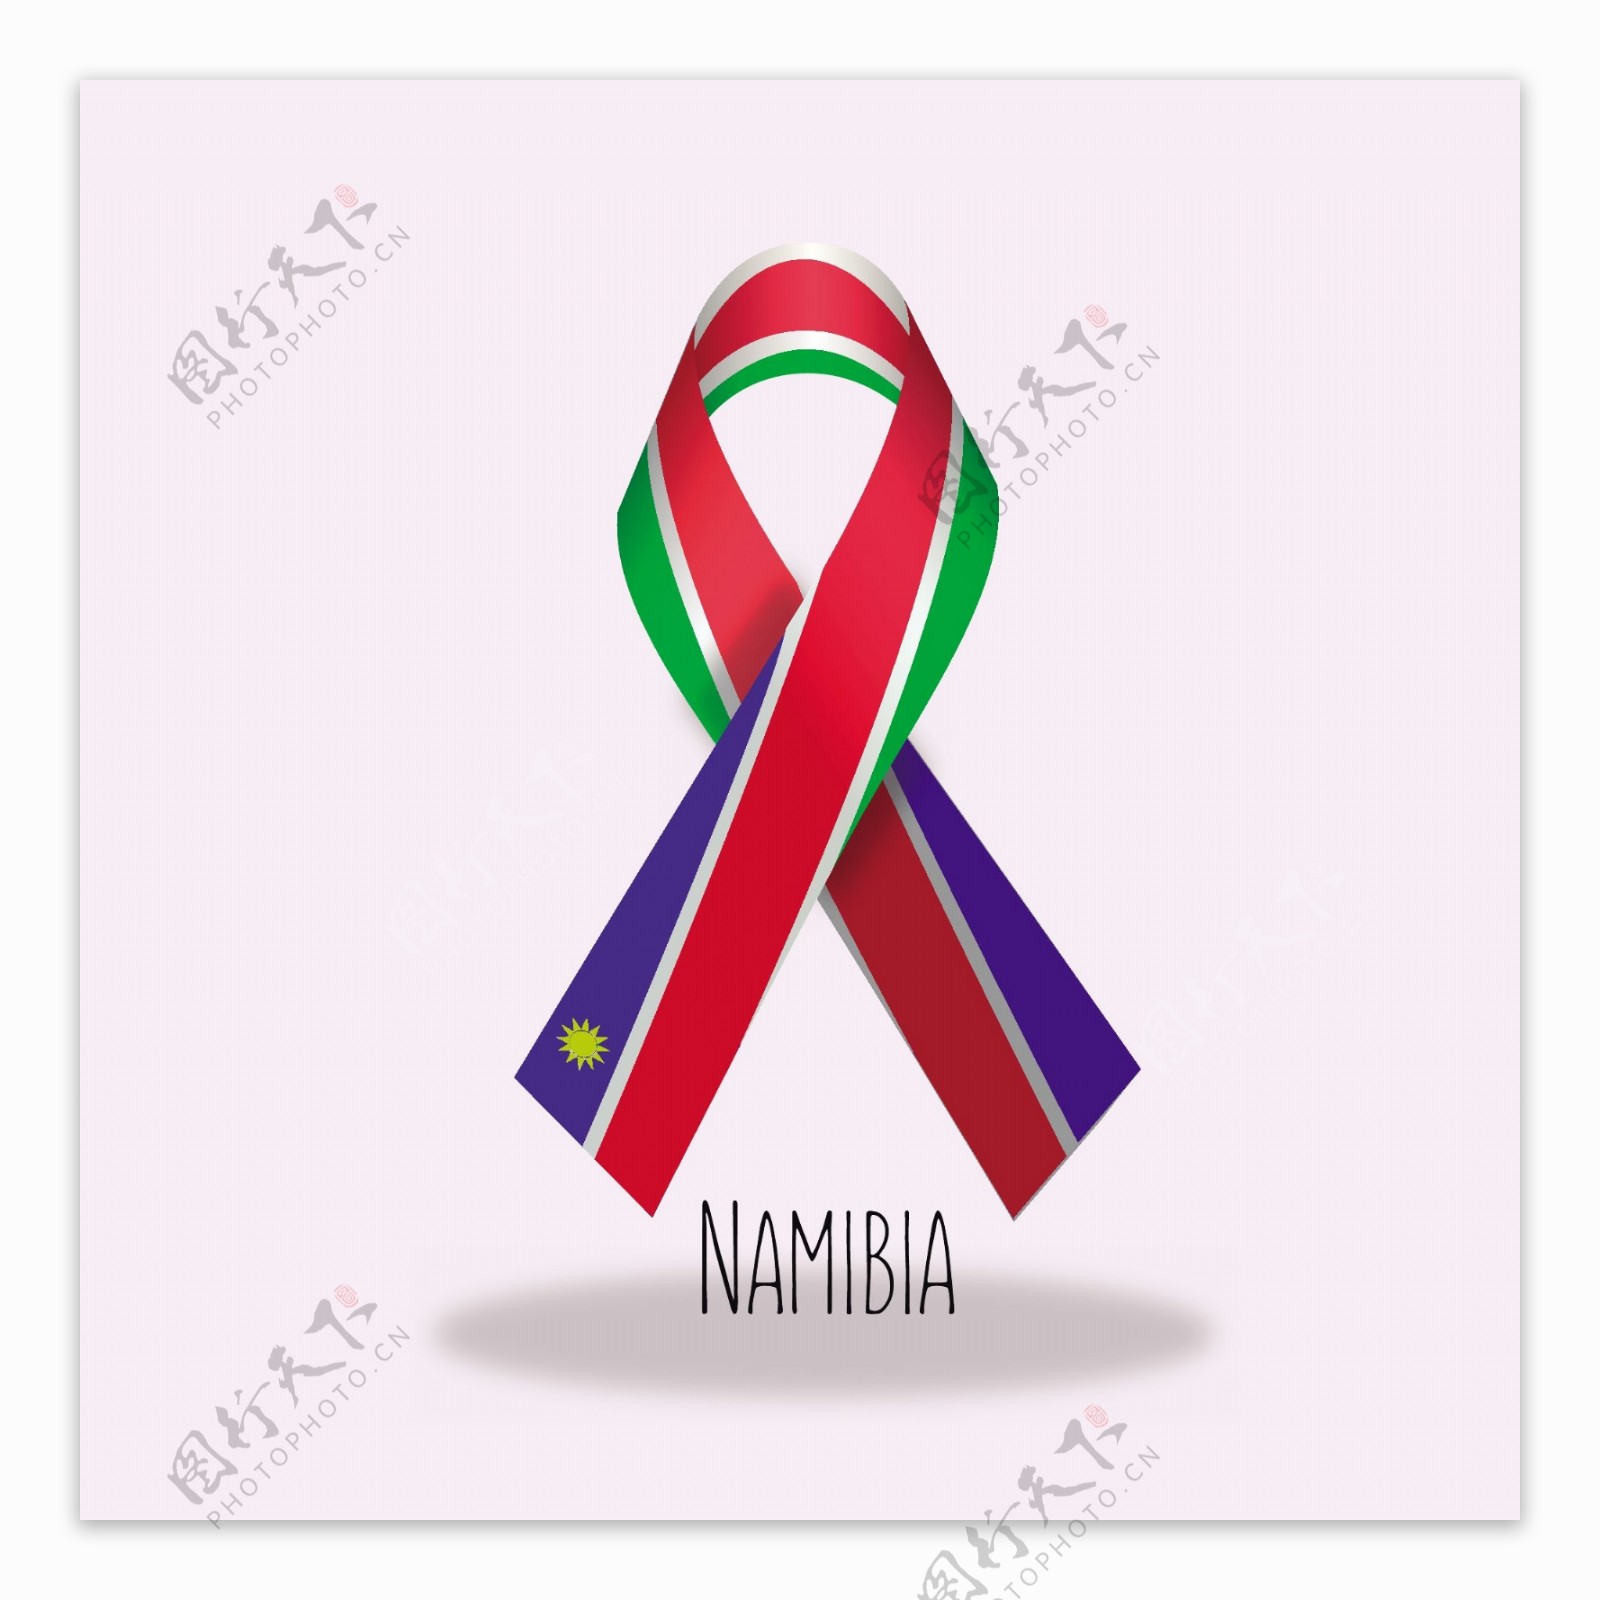 纳米比亚国旗丝带设计矢量素材